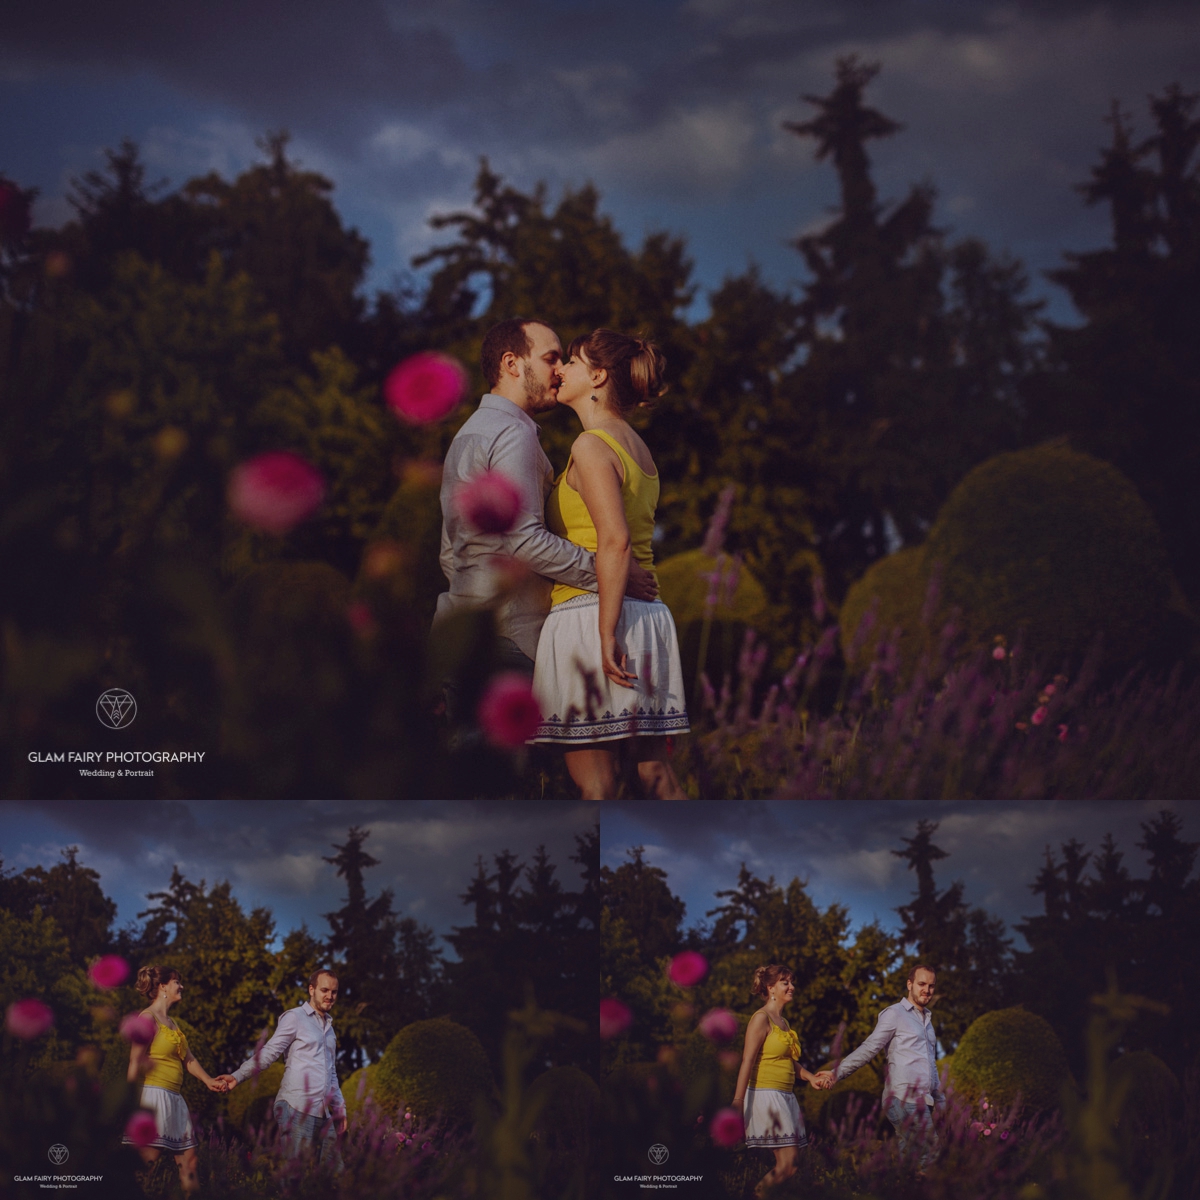 glamfairyphotography-seance-photo-couple-parc-de-sceaux-ophelie_0022